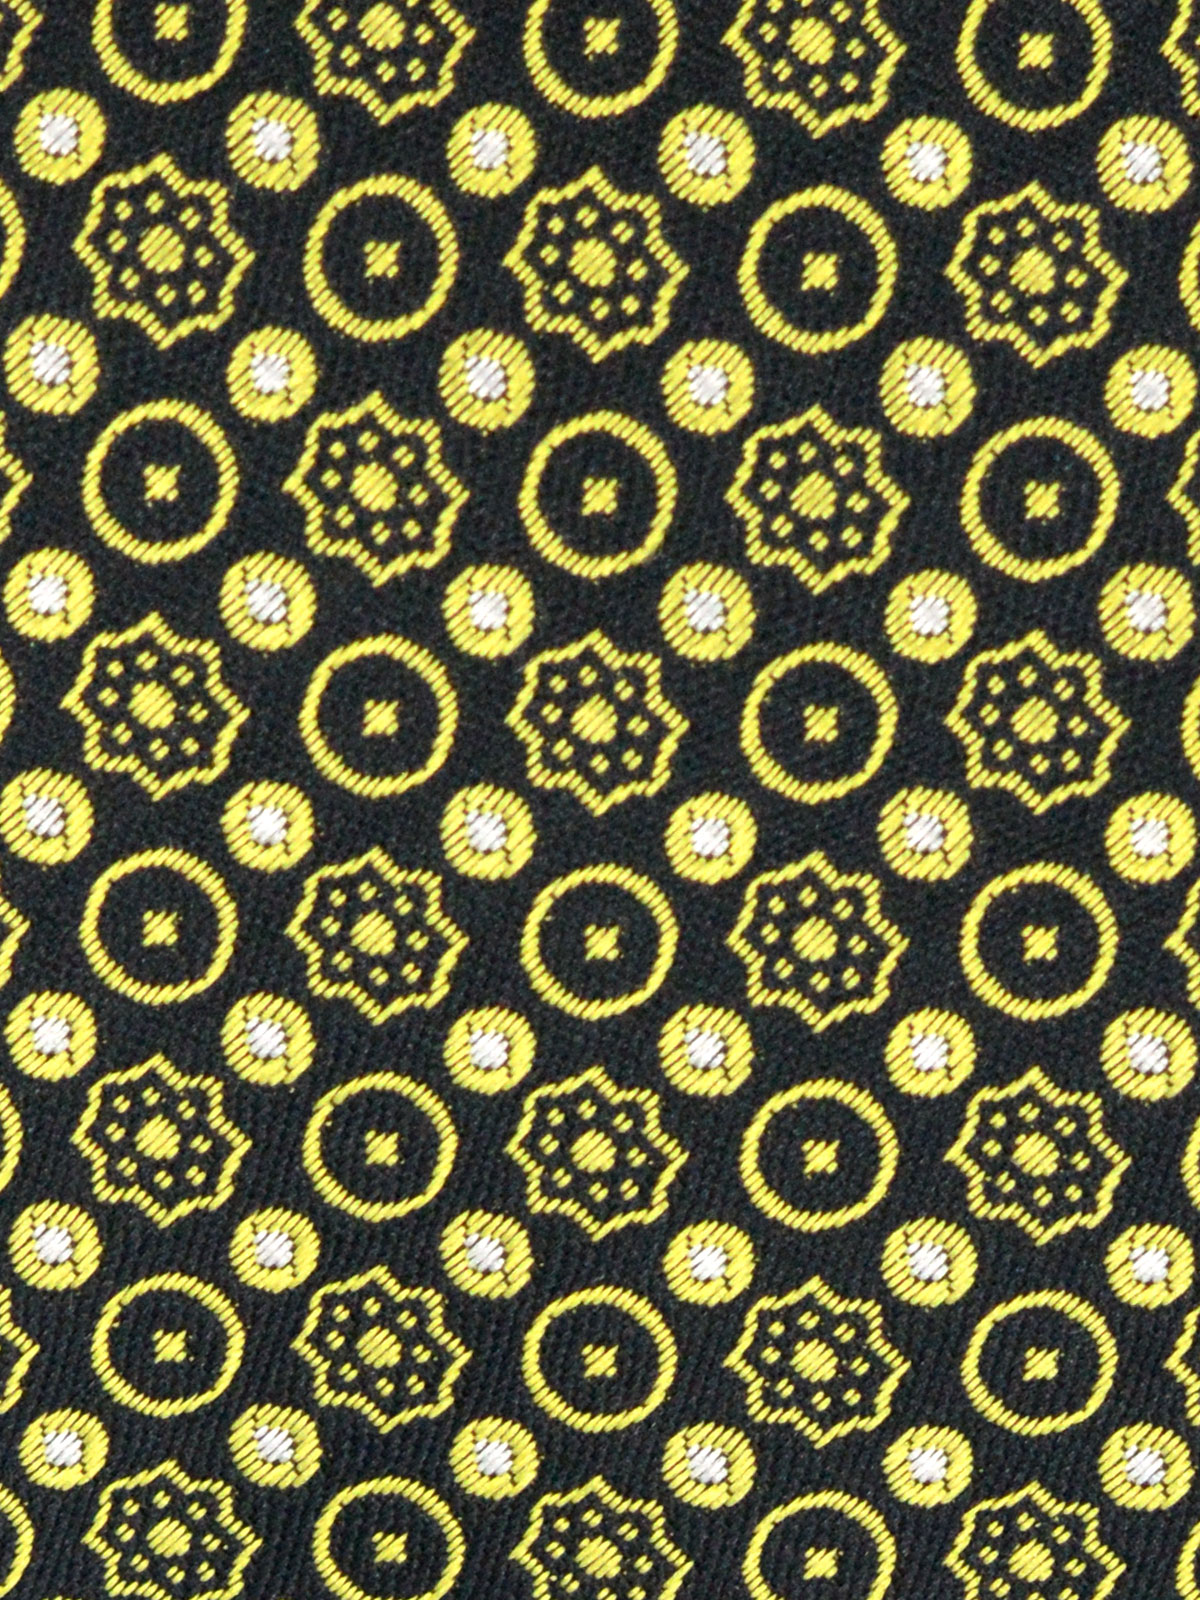  γραβάτα σε μαύρο χρώμα με κίτρινα λουλο - 10147 - € 14.06 img2